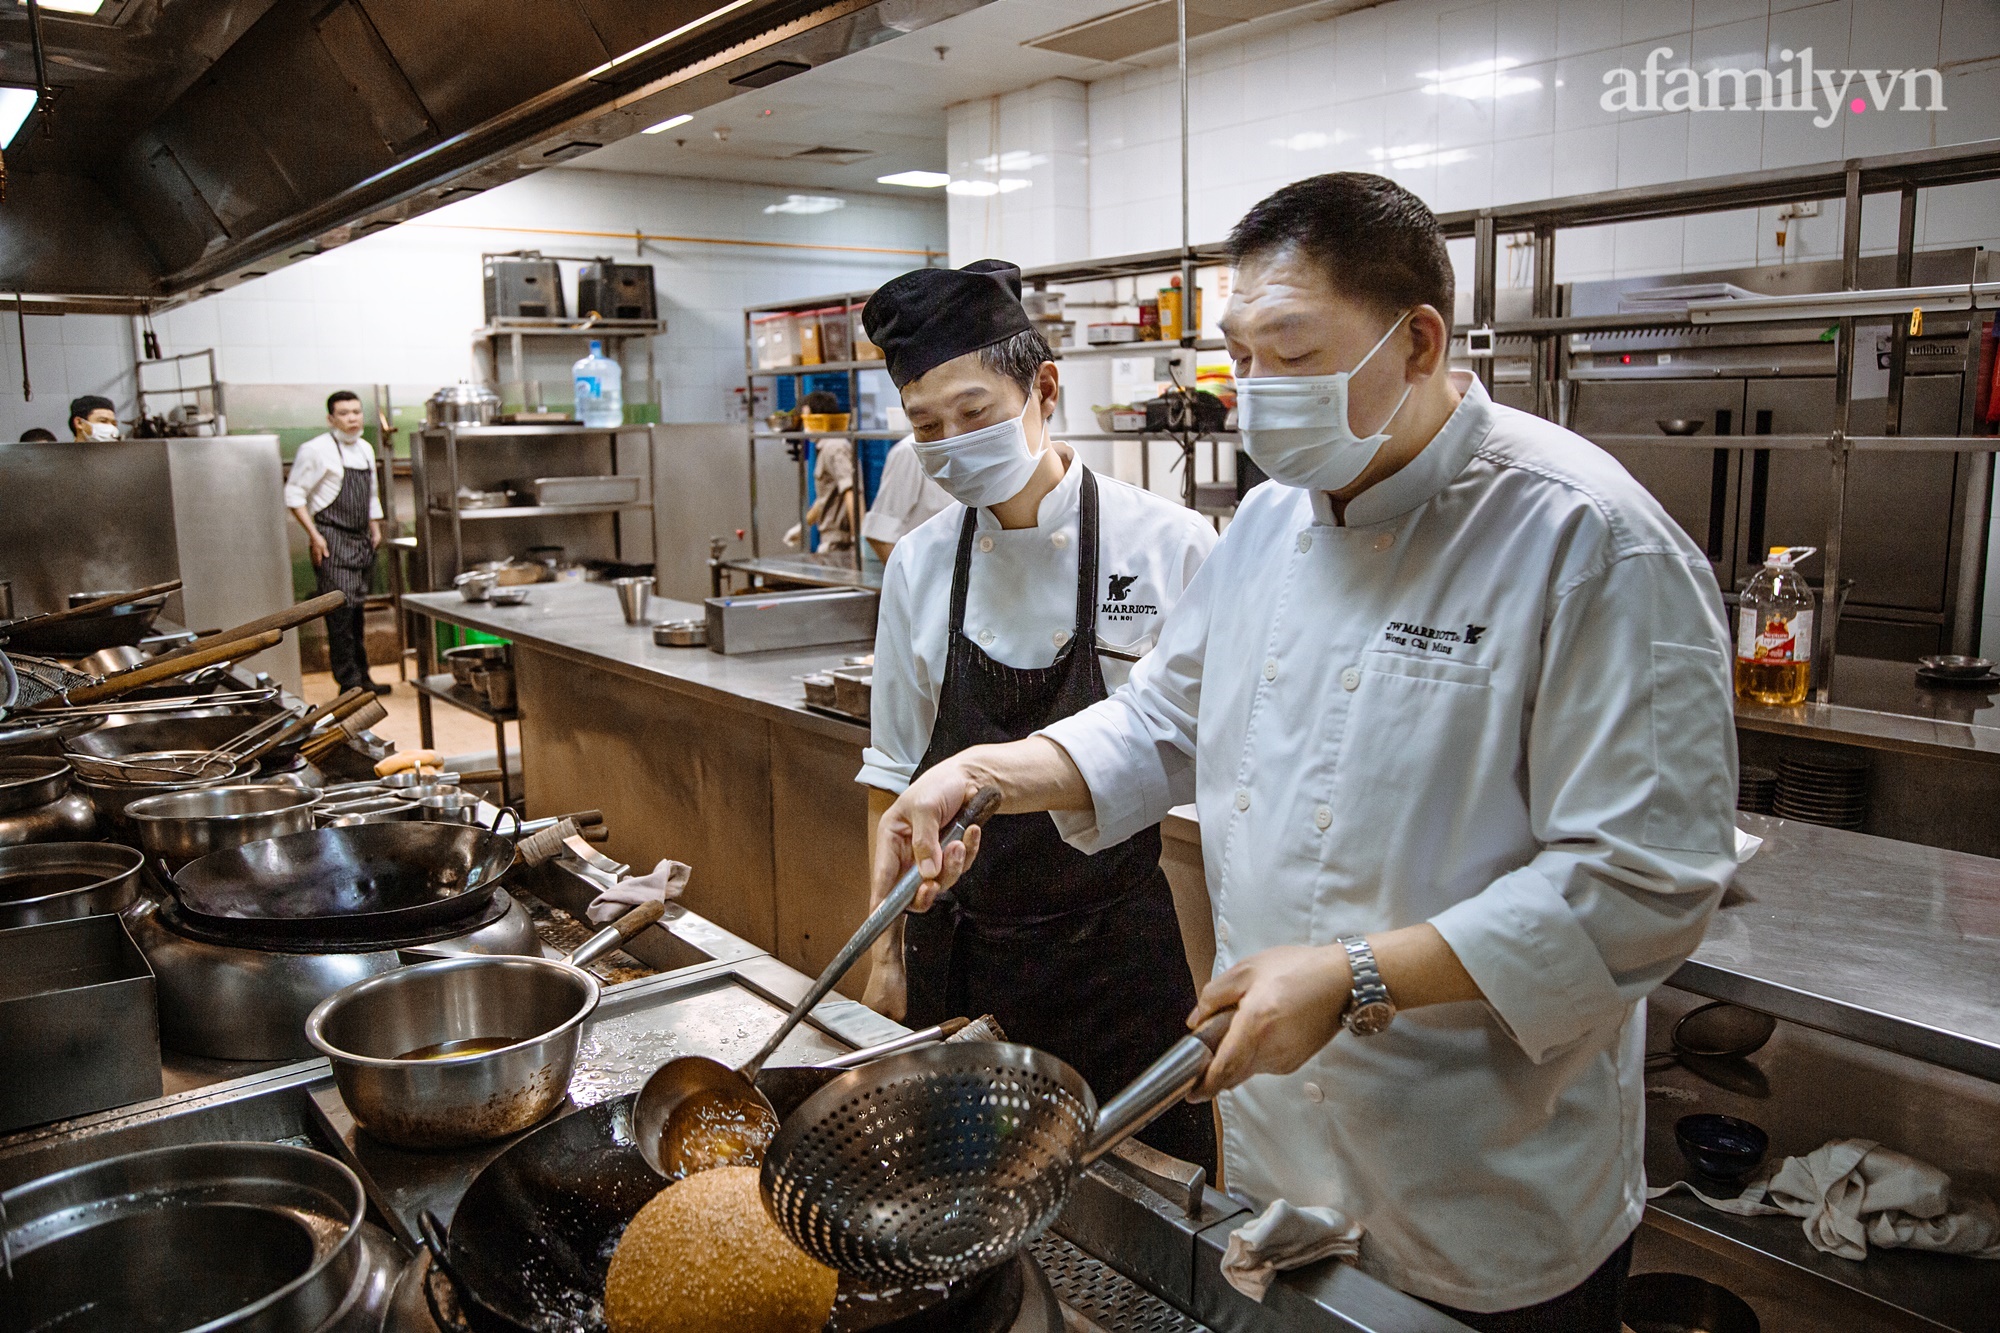 Chuyện nhập gia tùy tục của vị bếp trưởng Hong Kong sống tại Việt Nam hơn 1 thập kỷ: Thấy lạ khi pháo hoa không bắn vào mùng 2 Tết, vạn món ngon cũng chẳng bằng bánh chưng - Ảnh 8.